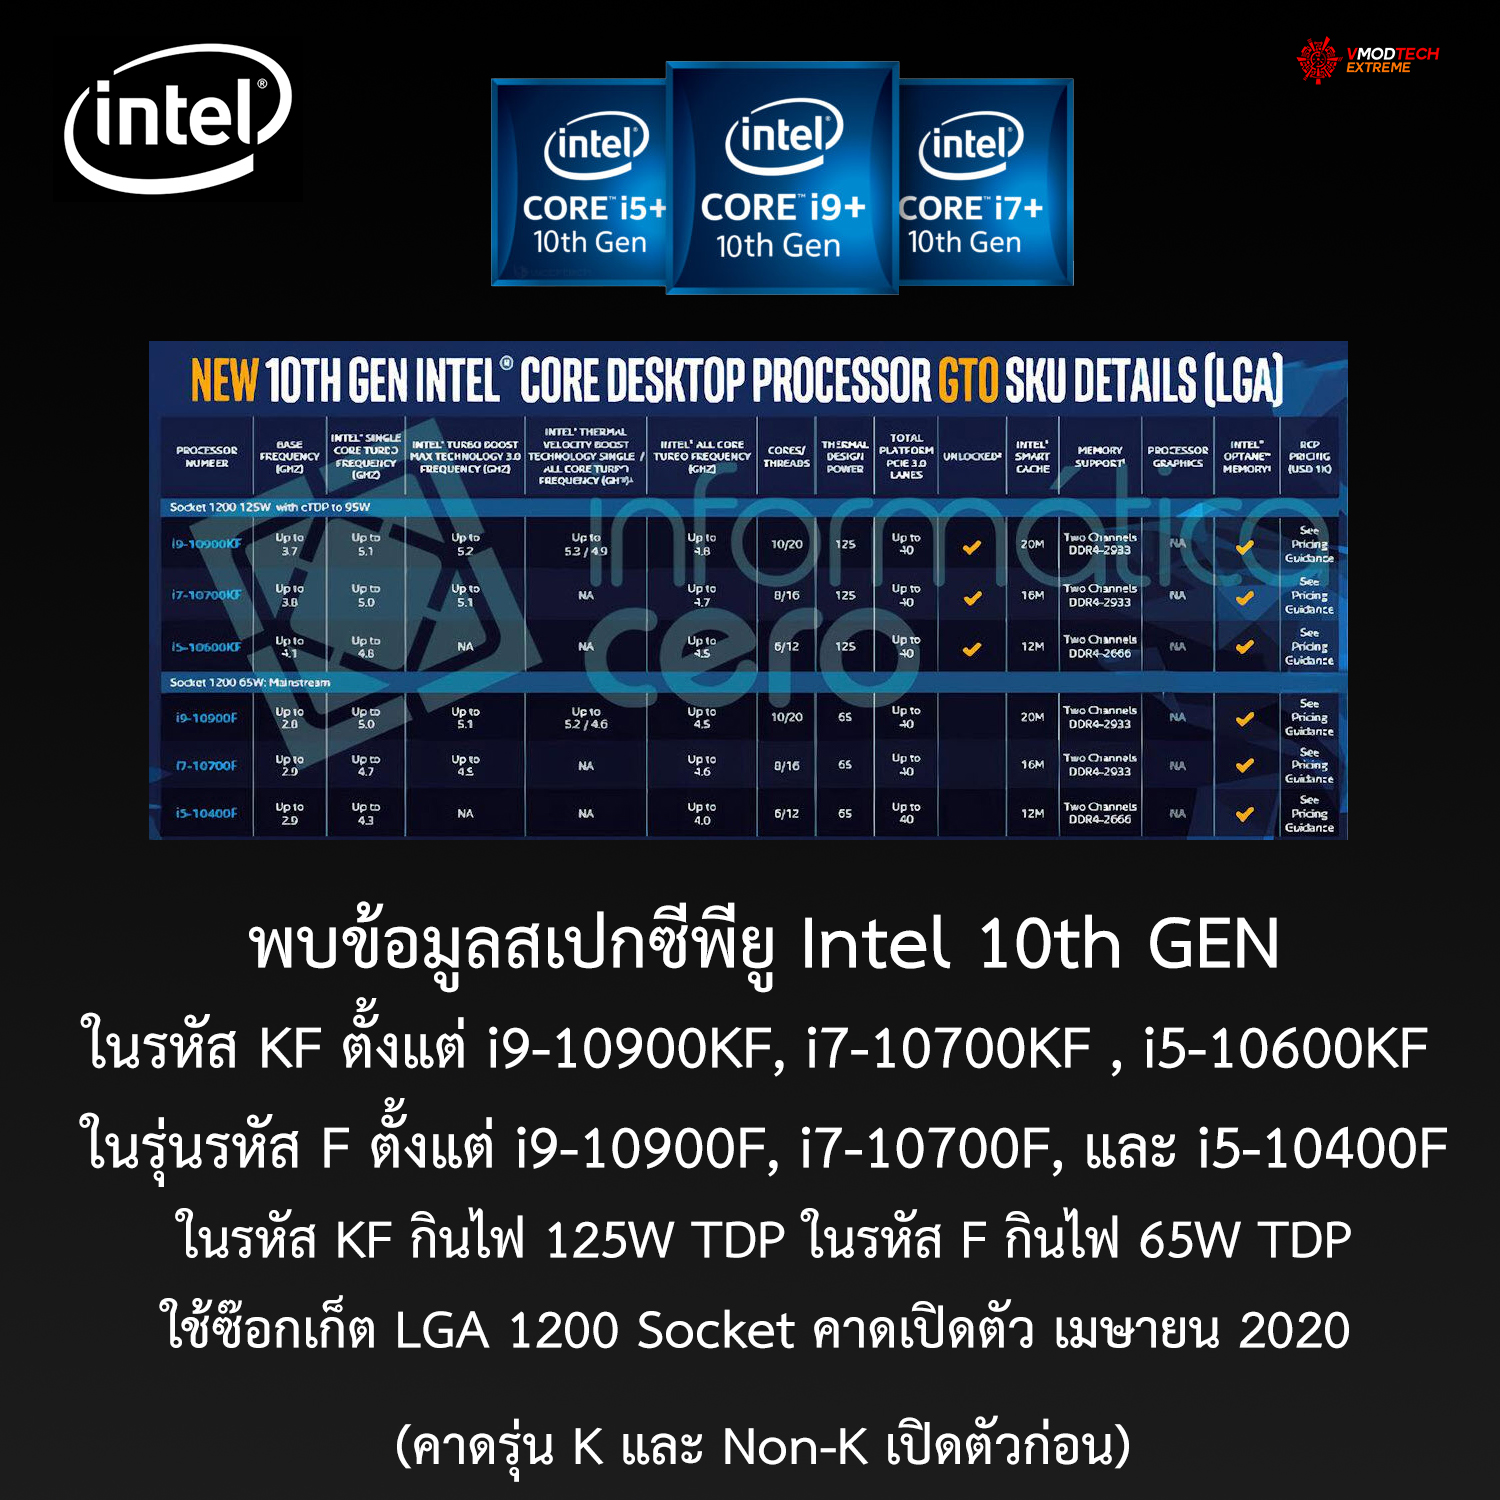 พบข้อมูลสเปกซีพียู Intel 10th GEN ในรหัส KF ตั้งแต่ i9-10900KF, i7-10700KF , i5-10600KF ในรุ่นรหัส F ตั้งแต่ i9-10900F, i7-10700F, และ i5-10400F 